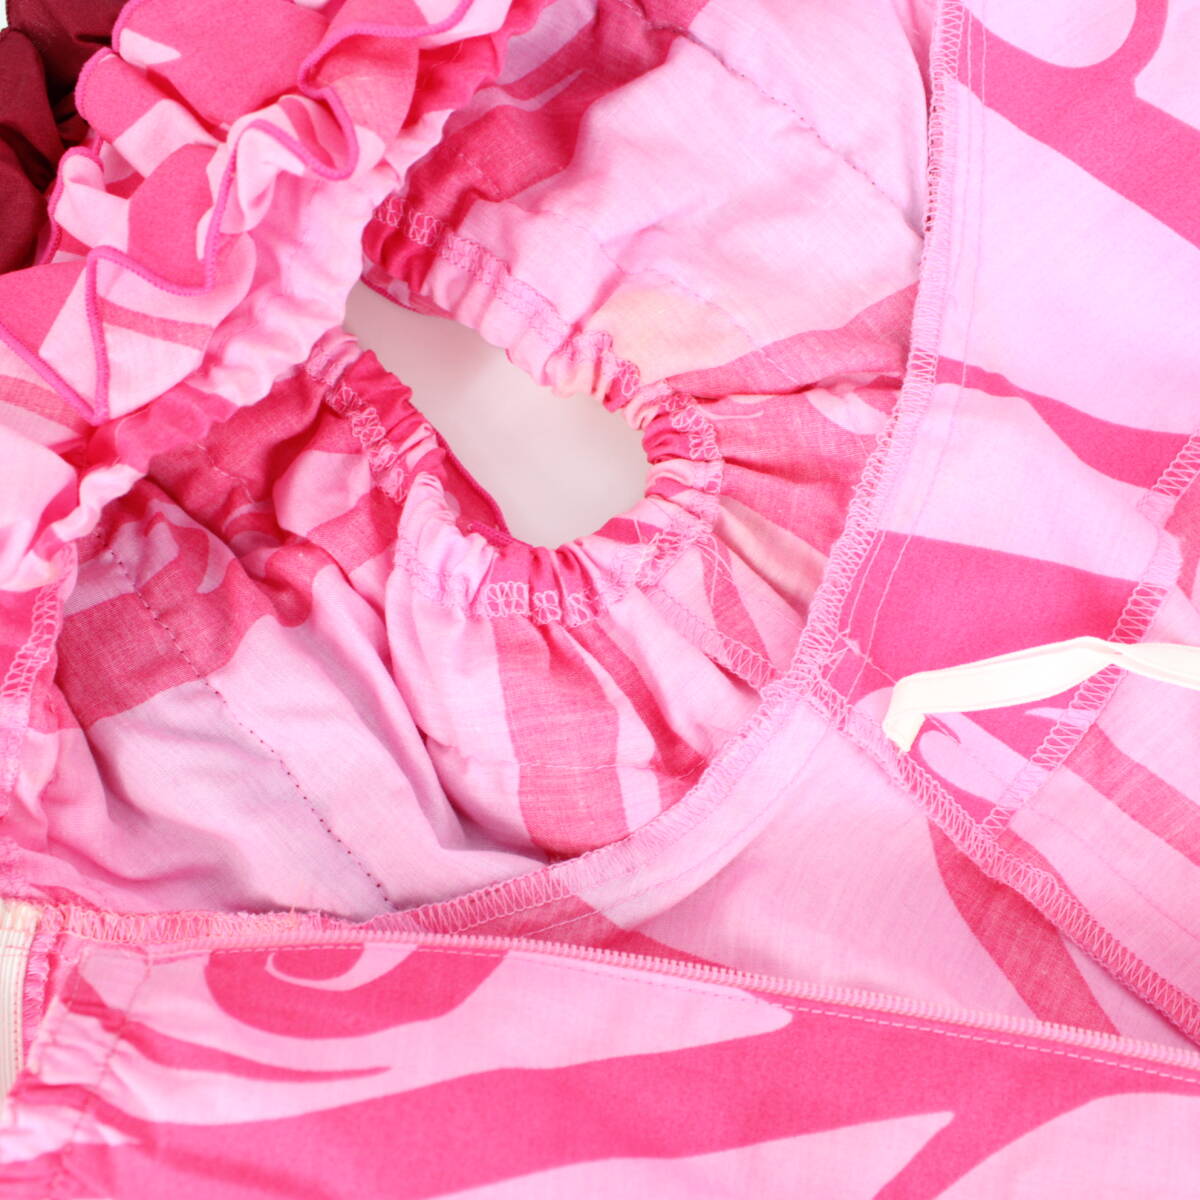 『送料無料』【フラダンス用衣装 グラデーションカラー】ALOHASTANDARDS ドレス ワンピース ムームー ピンク ホワイト プルメリア柄_画像8